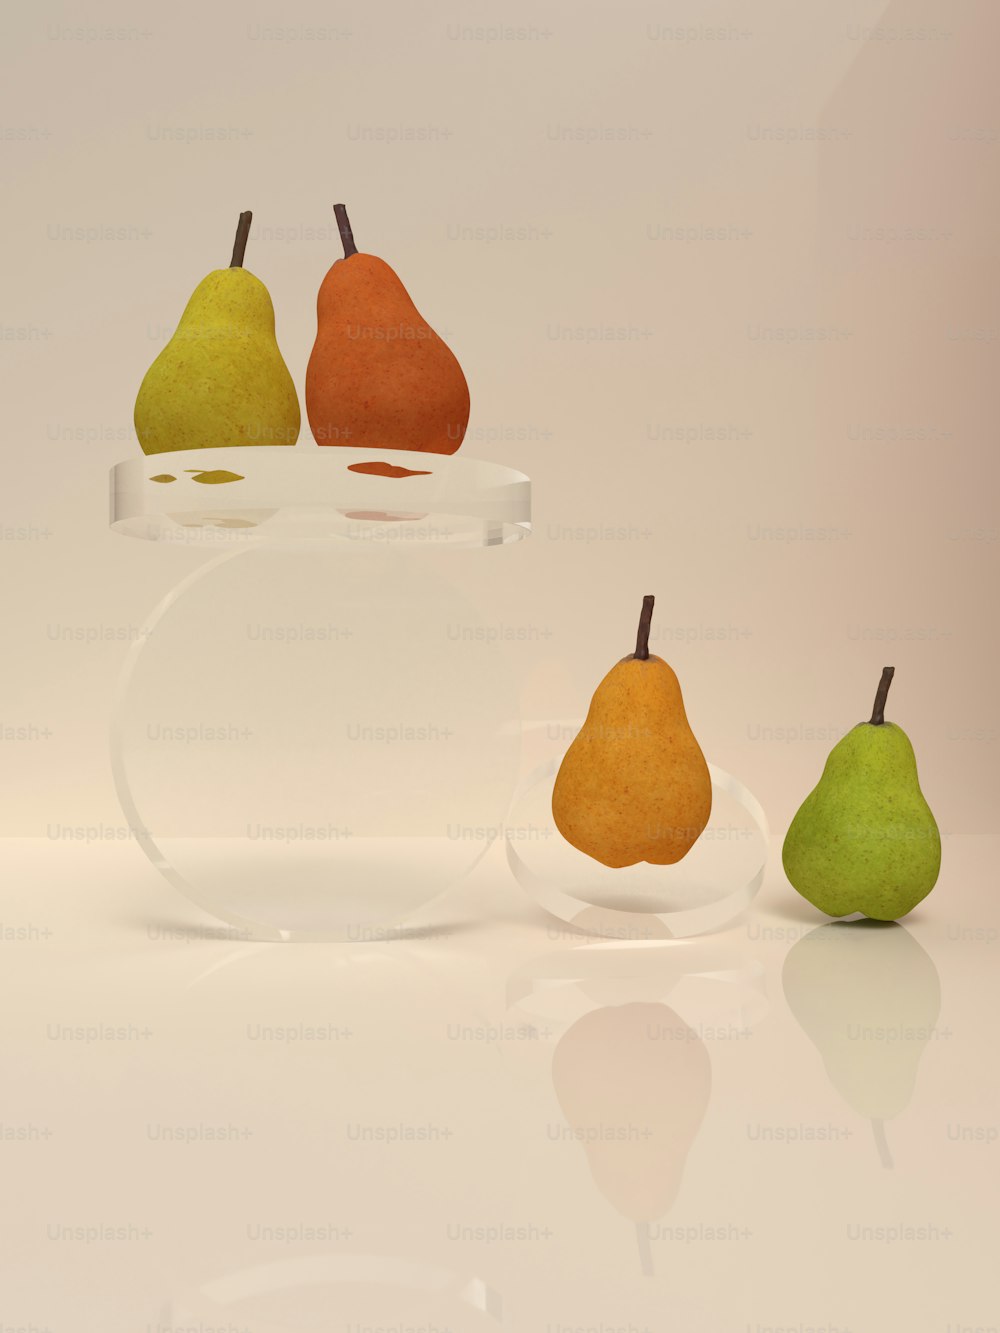 ガラスの花瓶に3つの梨と梨